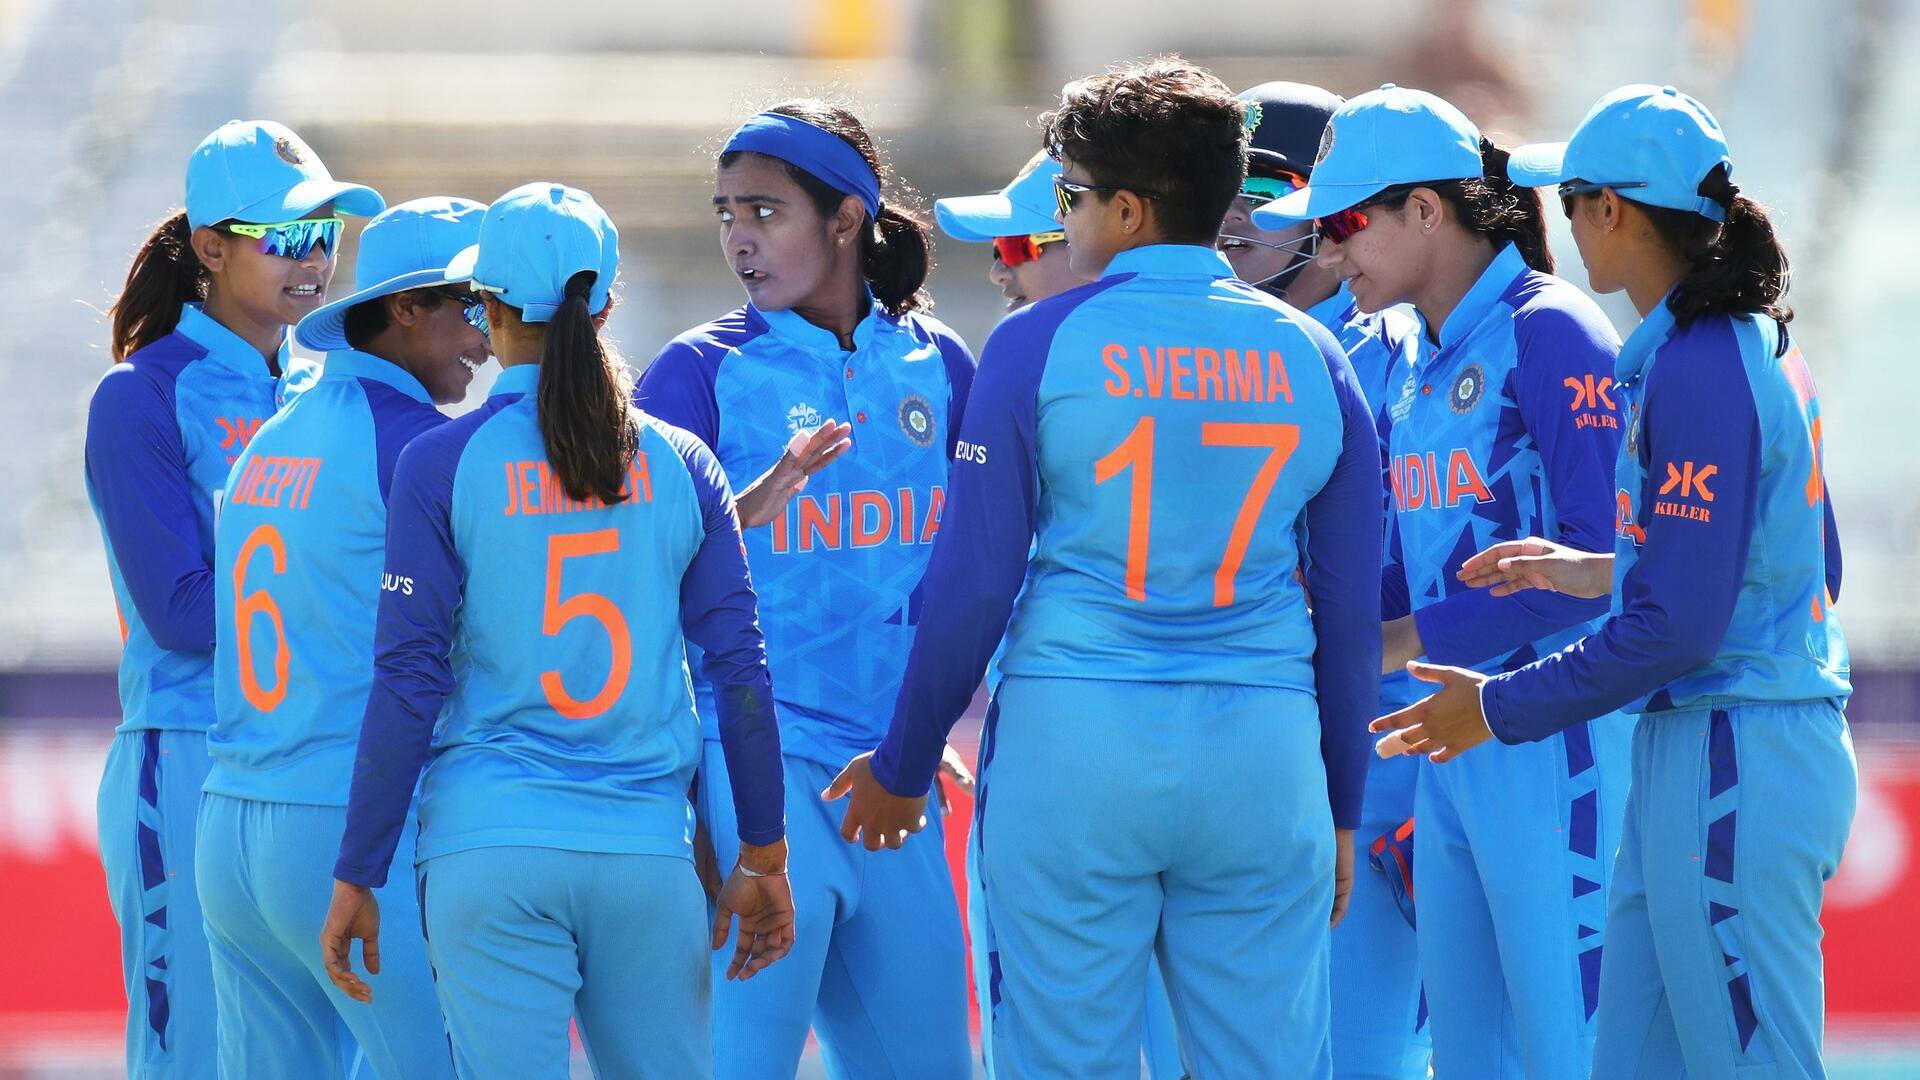 ऑस्ट्रेलिया के खिलाफ भारतीय महिलाओं ने फील्डिंग में की खूब गलतियां, टीम को हुआ बड़ा नुकसान